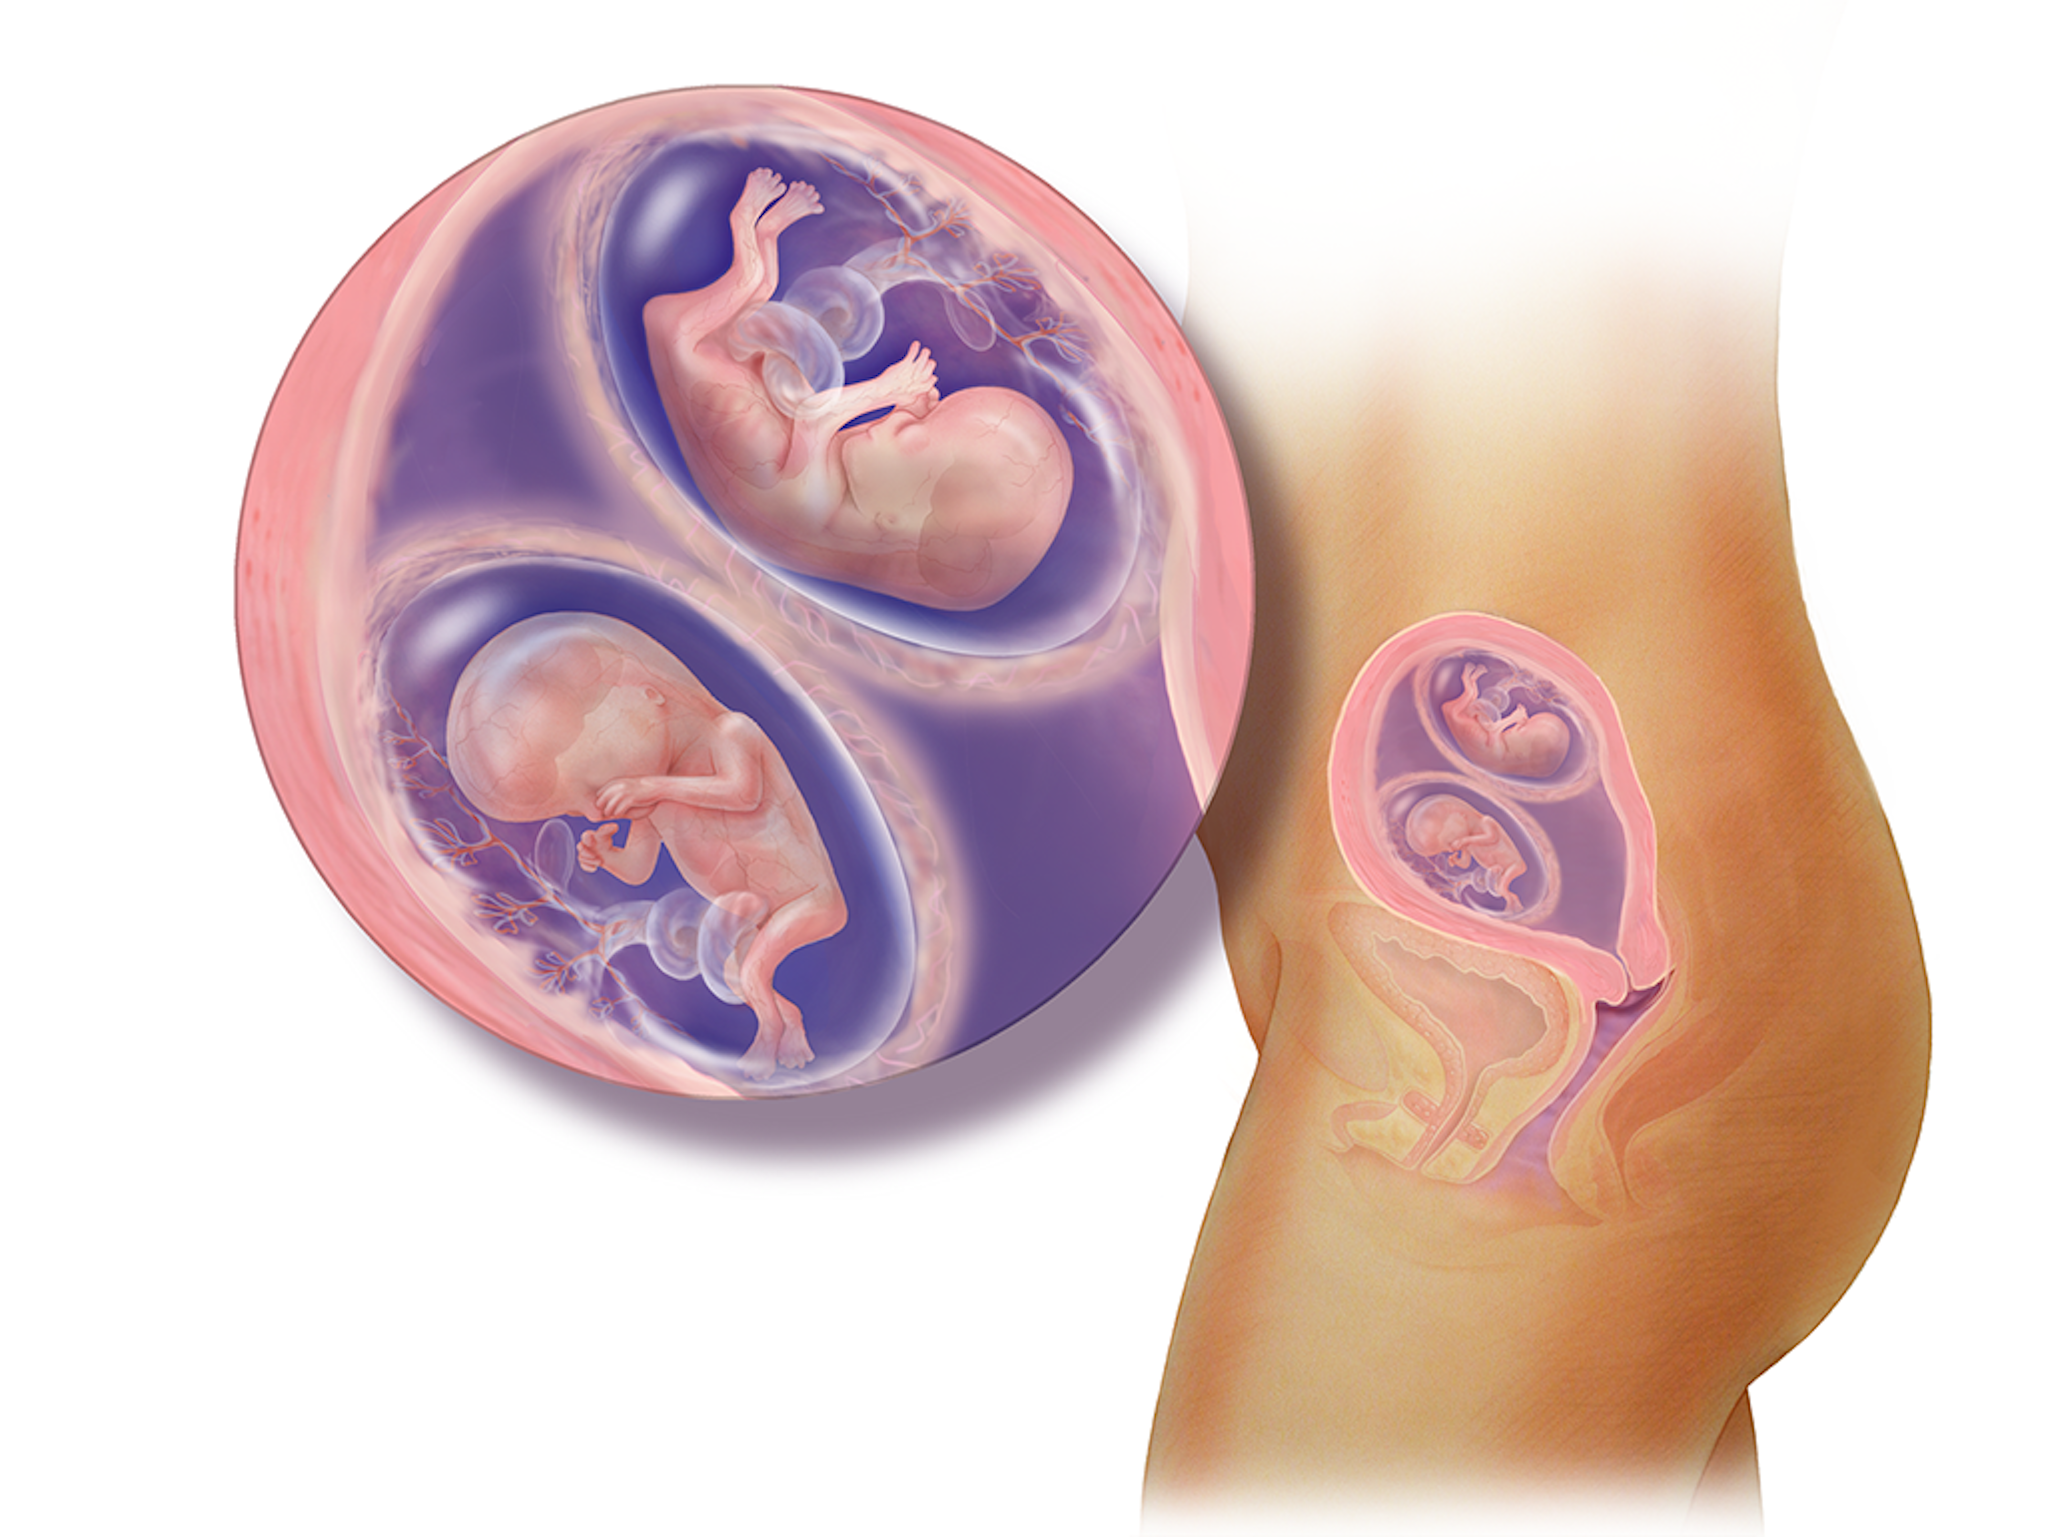 12 неделя беременности: что происходит с малышом и мамой | узи, развитие плода и живот на 12 неделе беременности